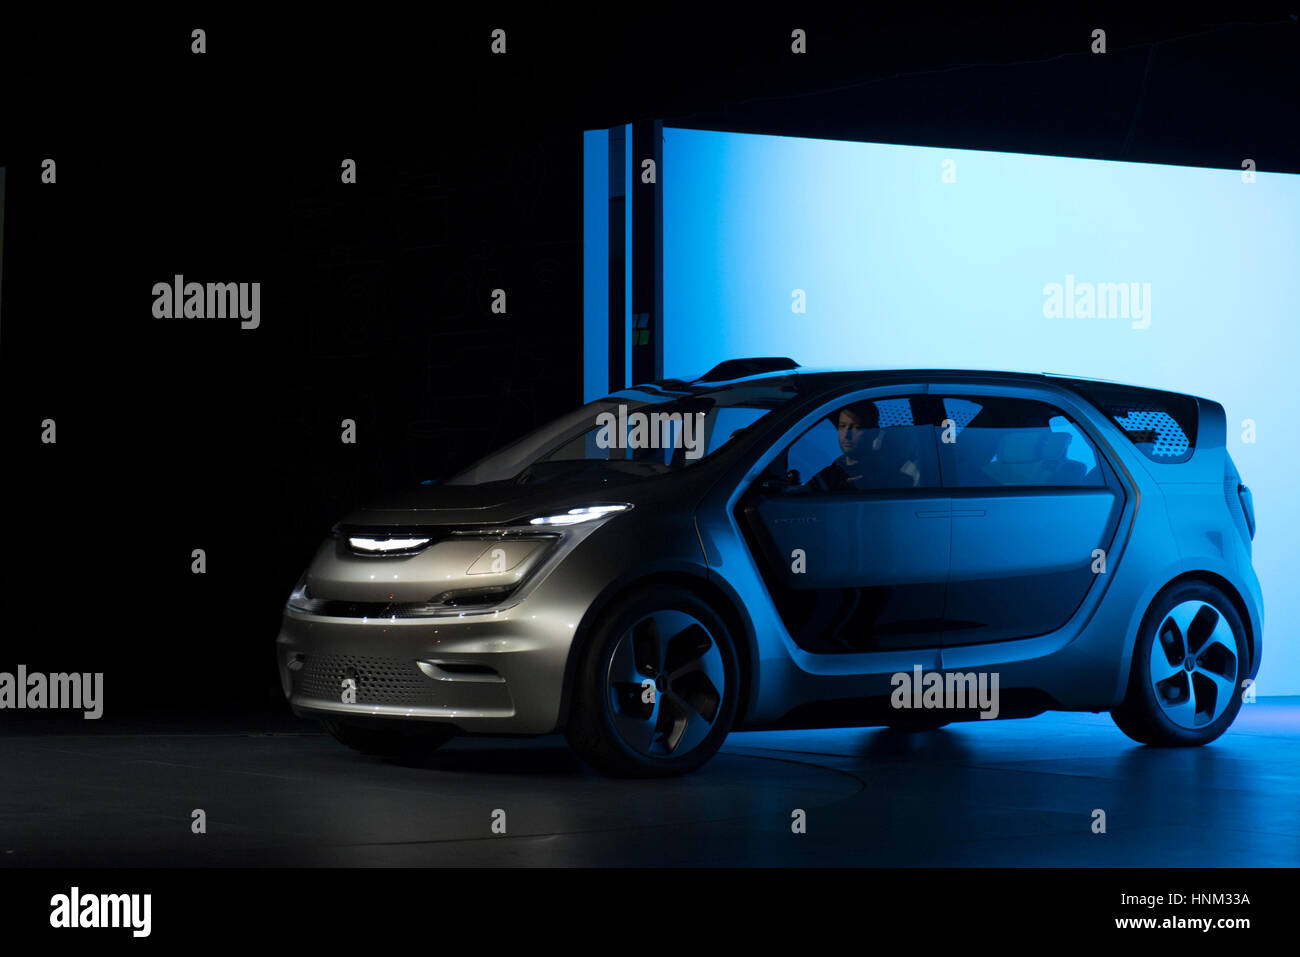 Il Portale di Chrysler concept car è mostrata durante una presentazione presso l'International Consumer Electronics Show (CES) di Las Vegas, Nevada. Foto Stock